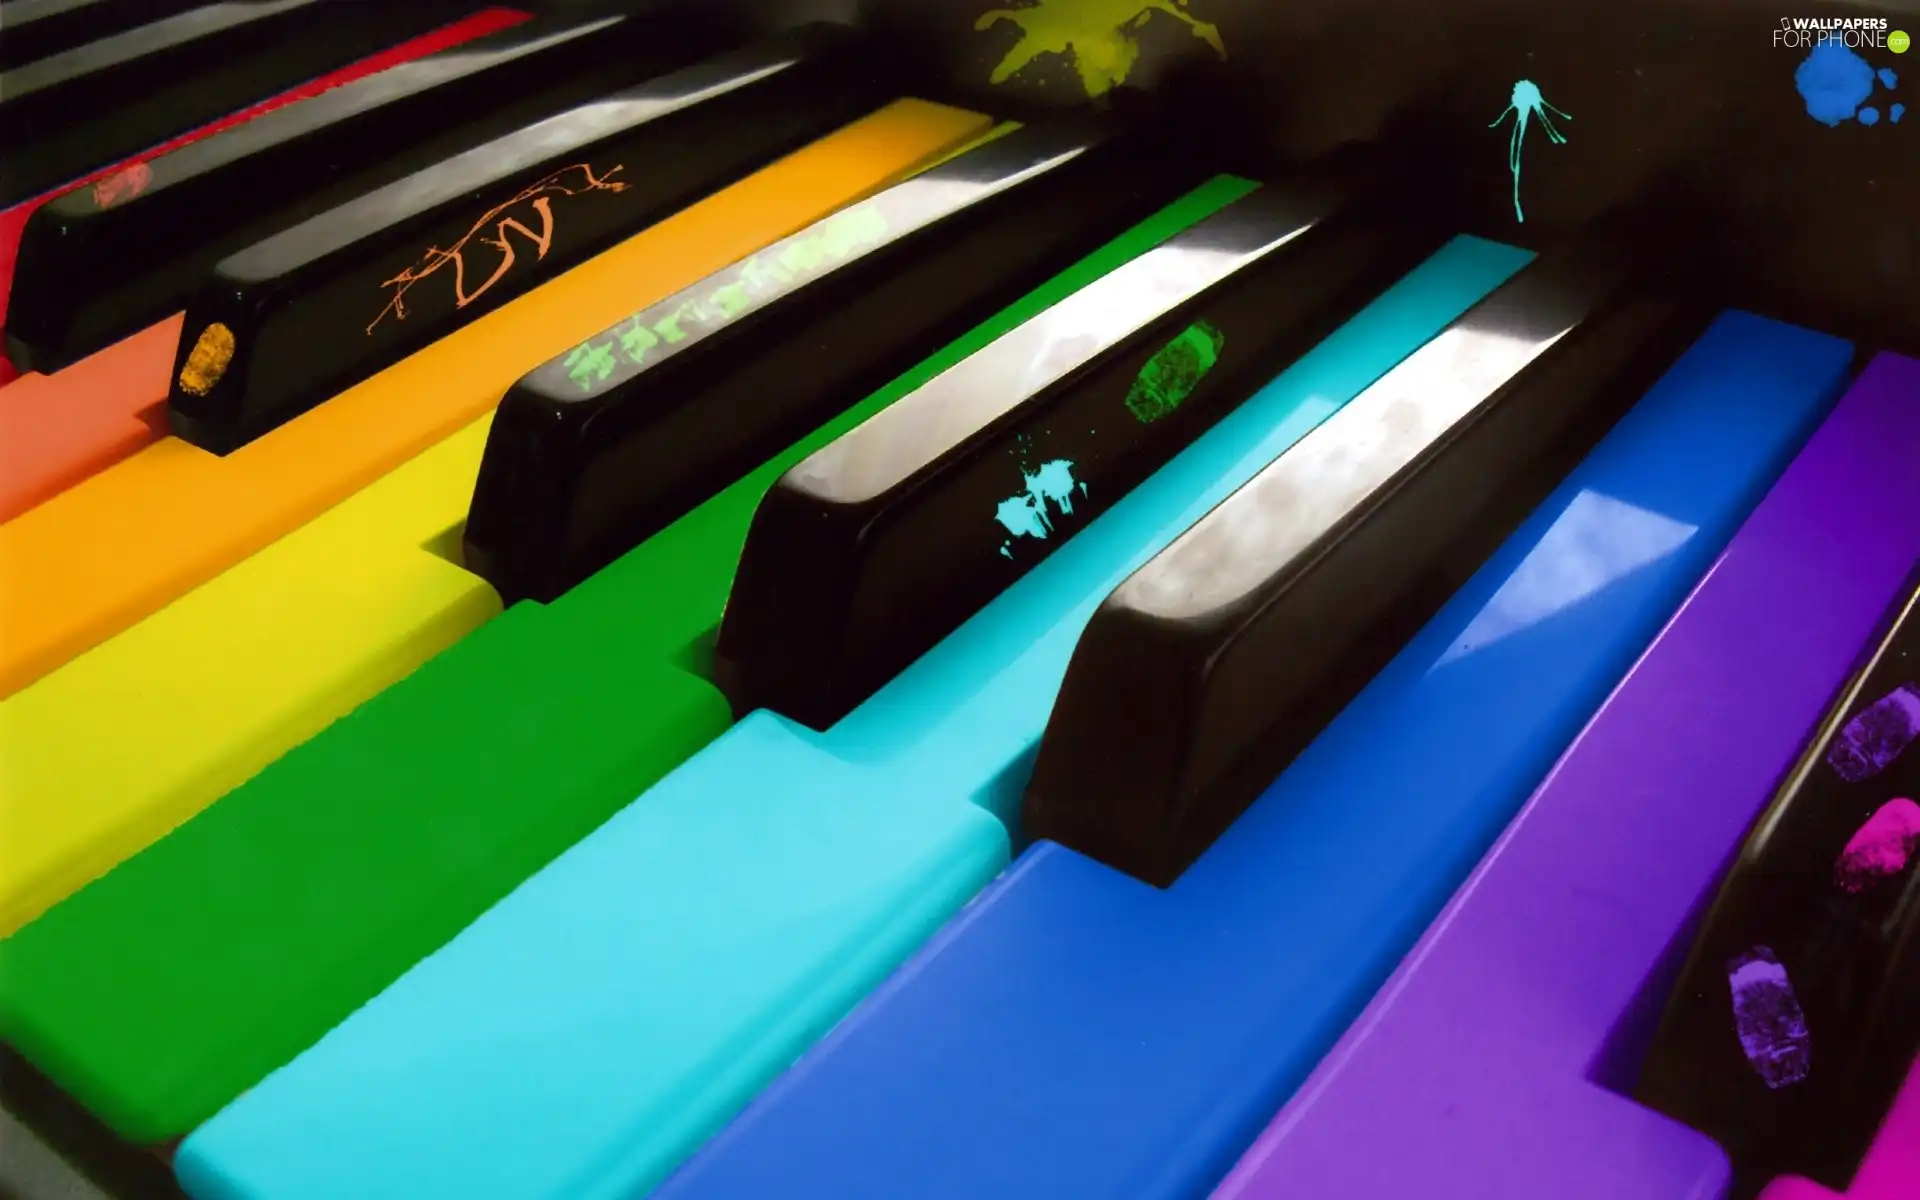 Coloured, keyboard